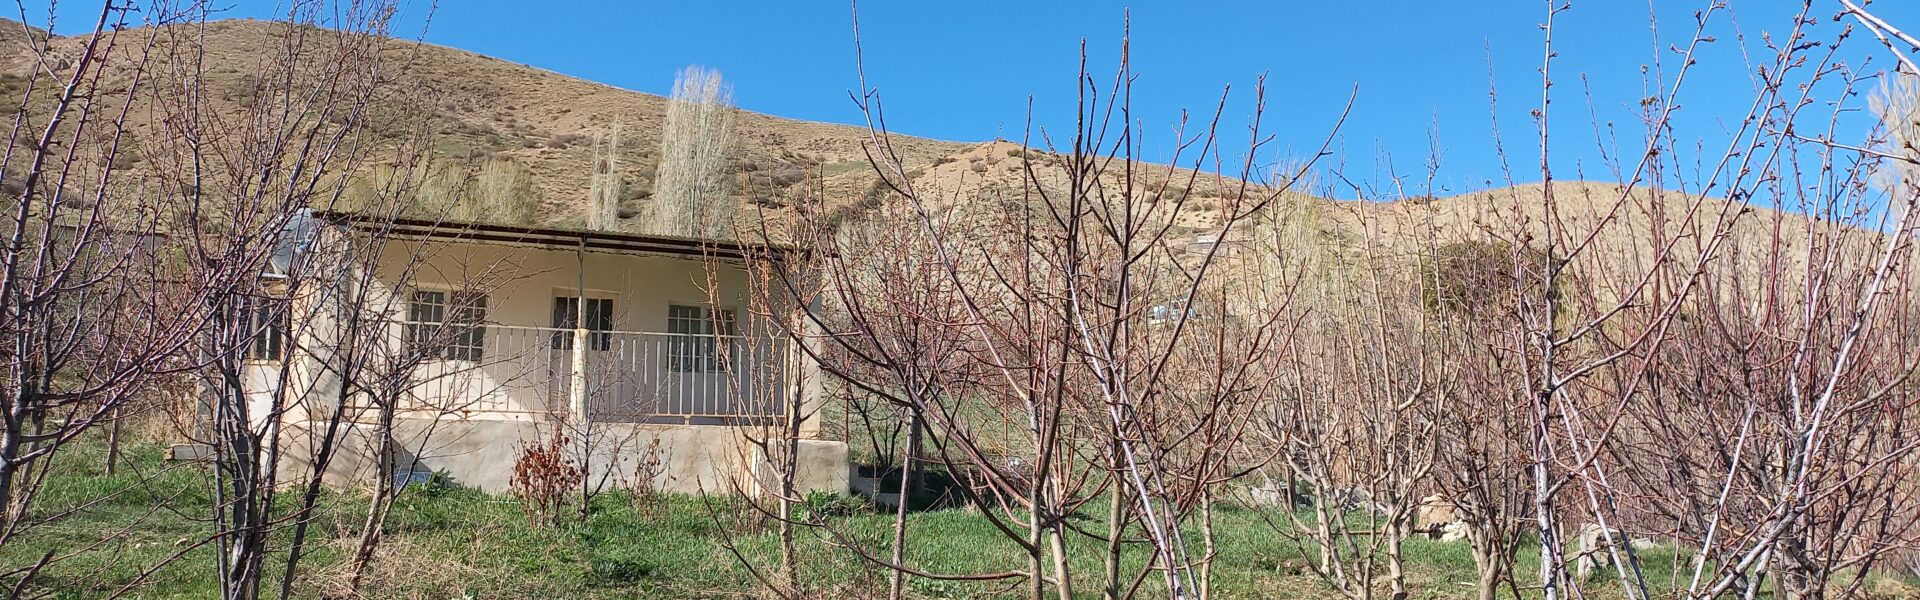 خانه باغی طهنه فیروزکوه